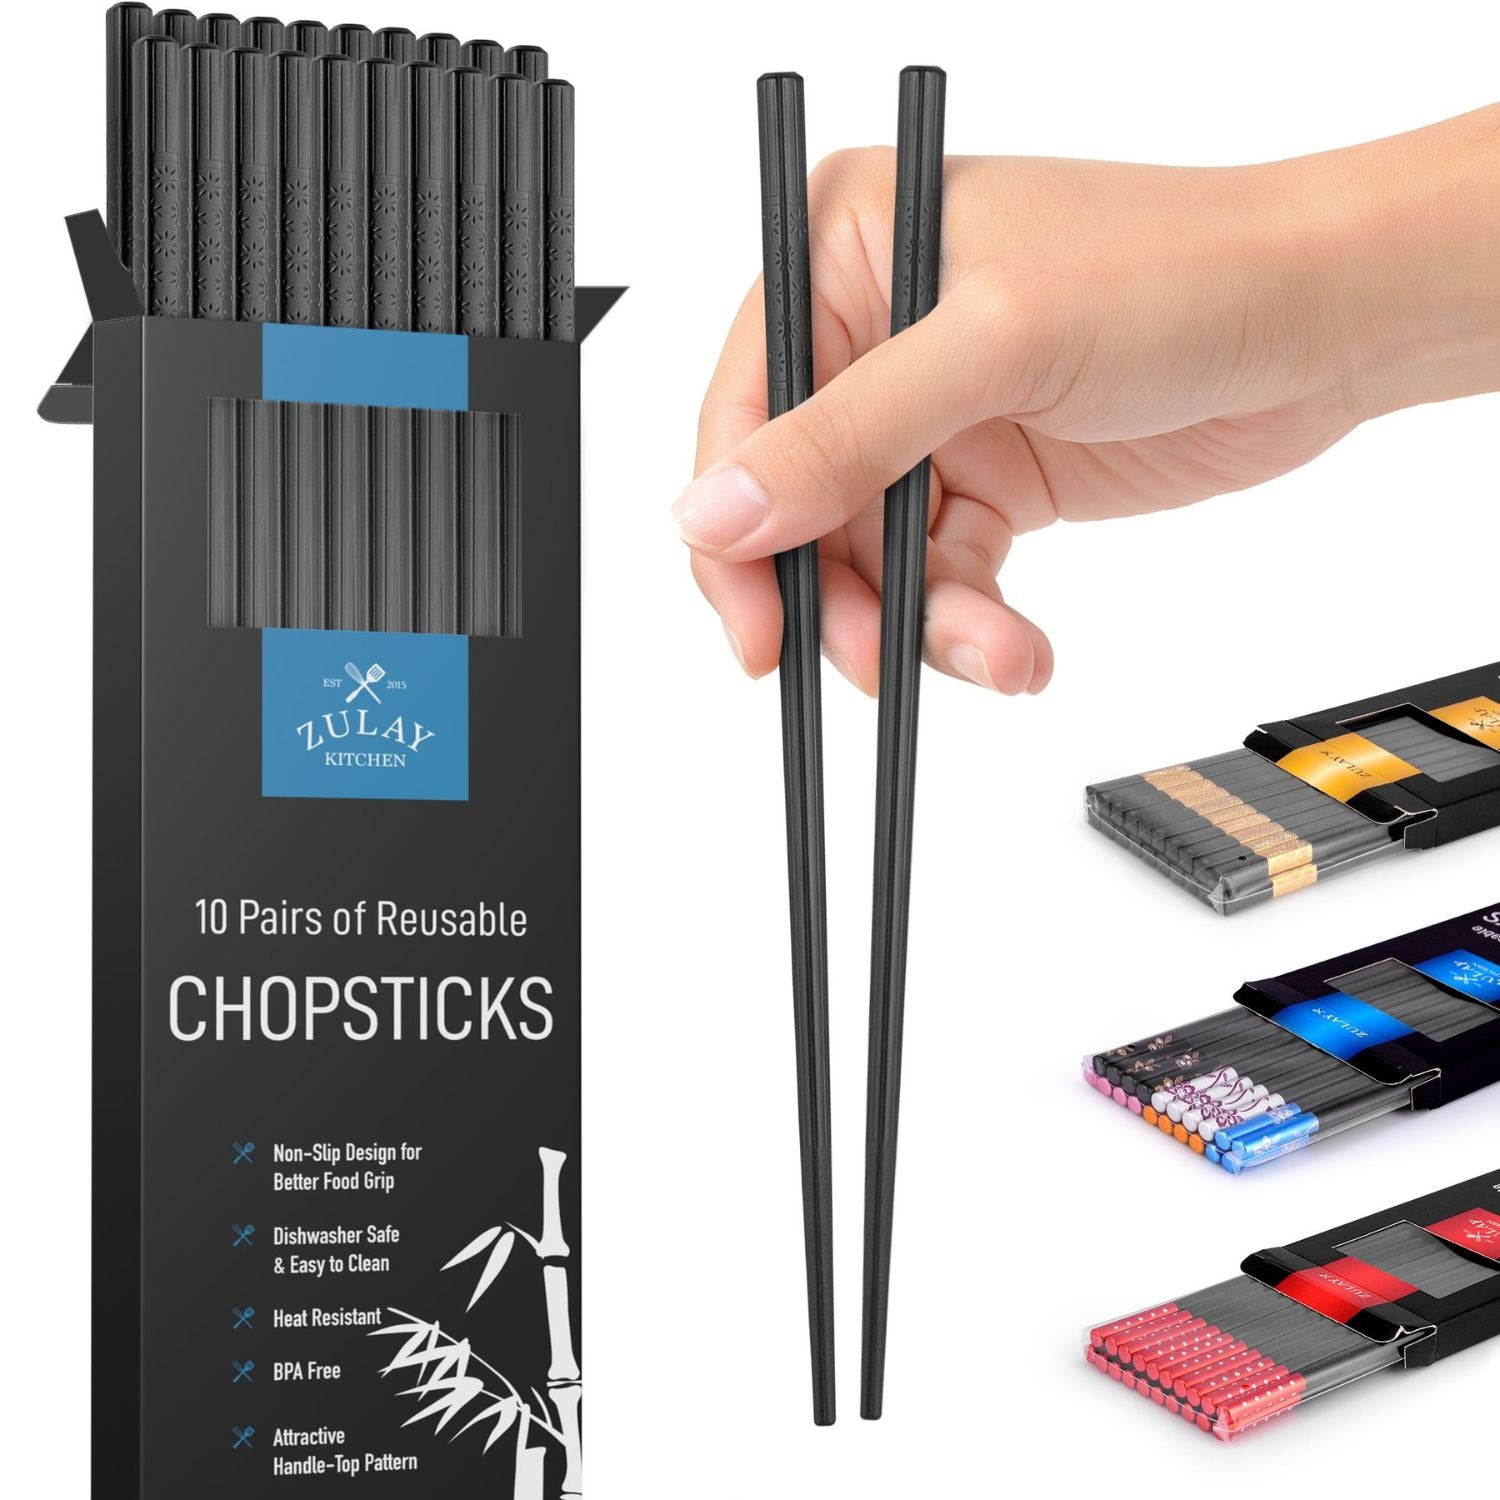 Premium Japanese Chopsticks by Zulay Kitchen